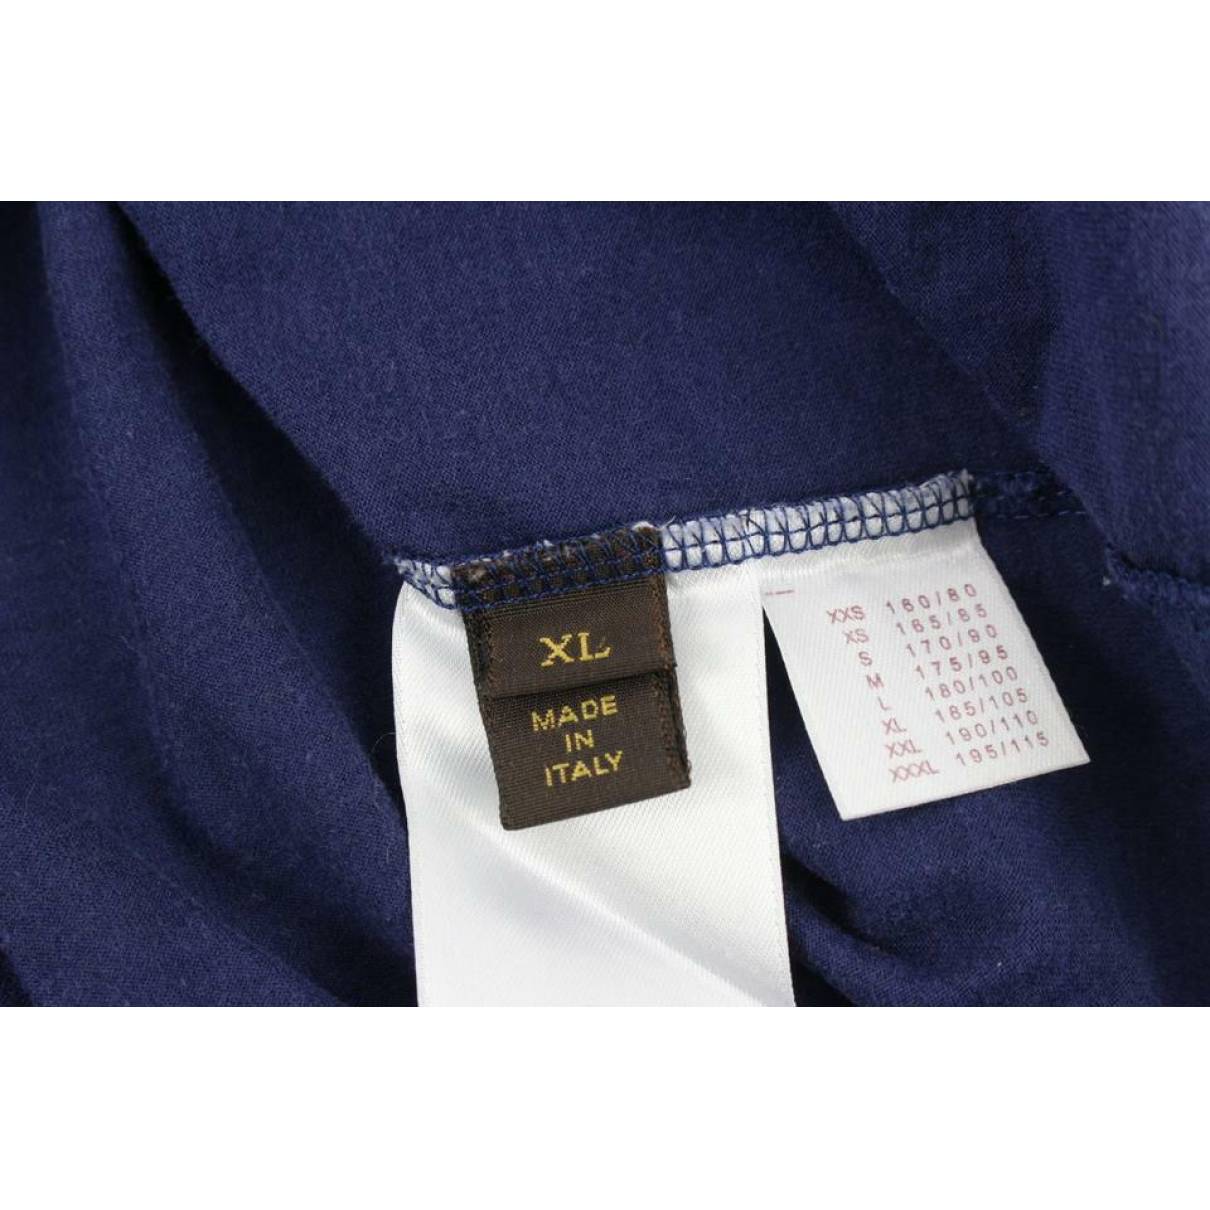 Louis Vuitton Men's Authenticated T-Shirt